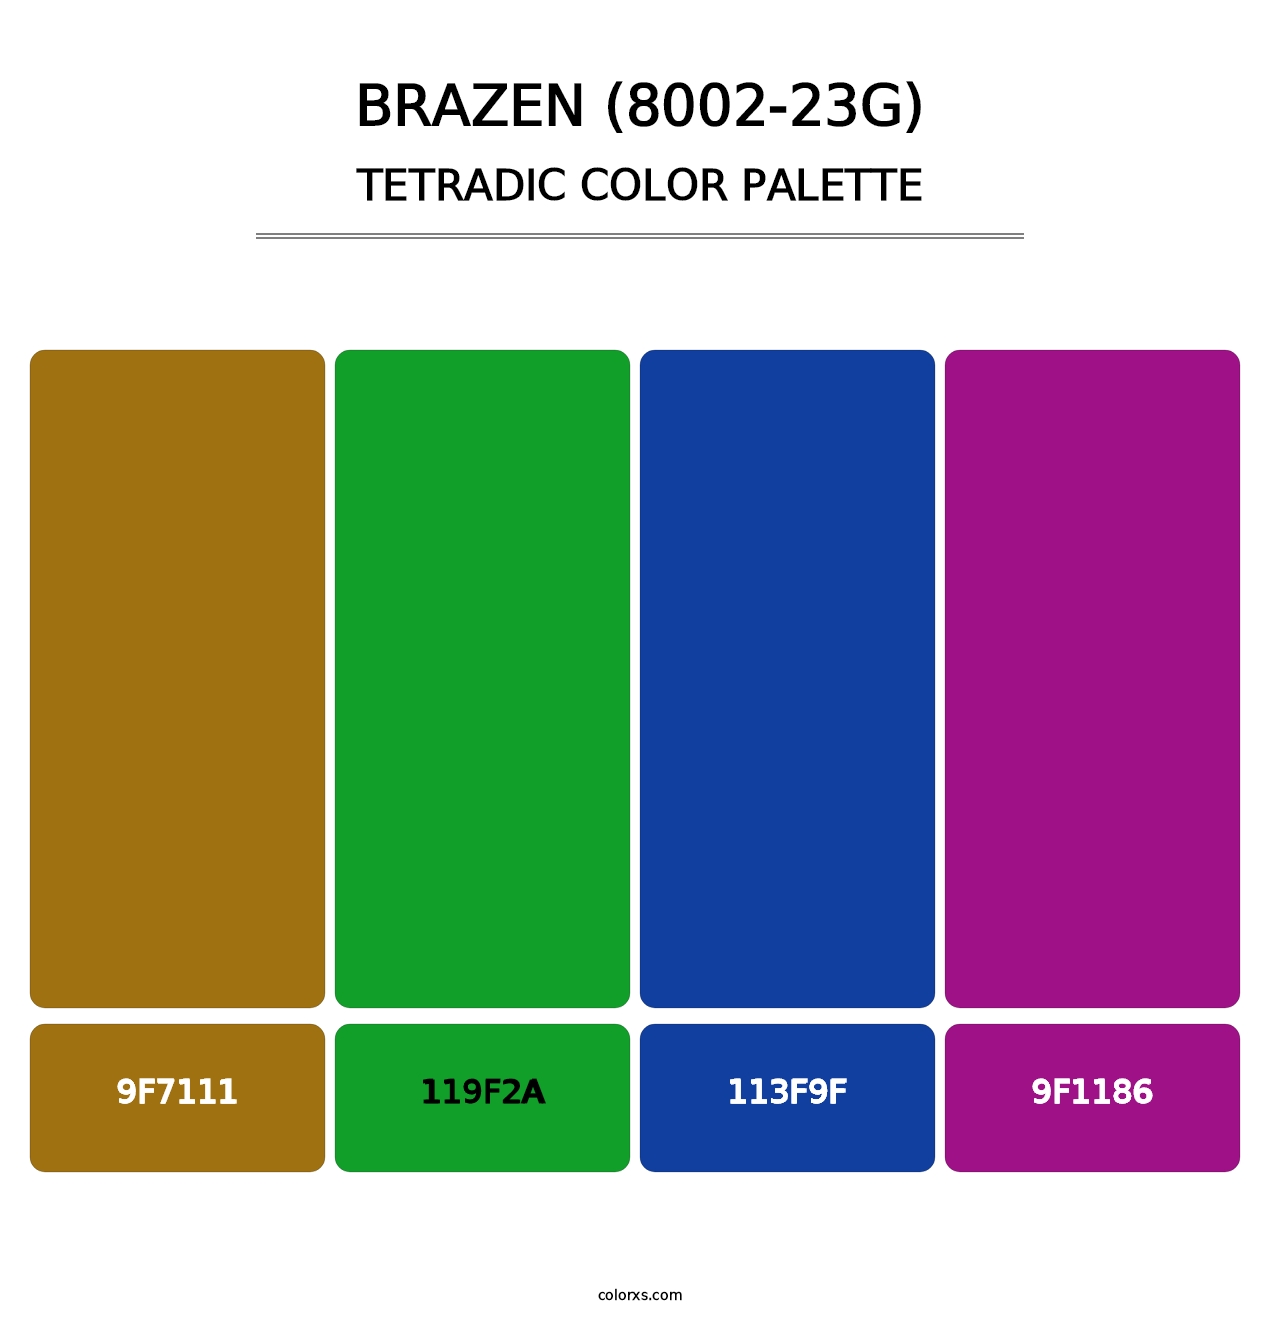 Brazen (8002-23G) - Tetradic Color Palette